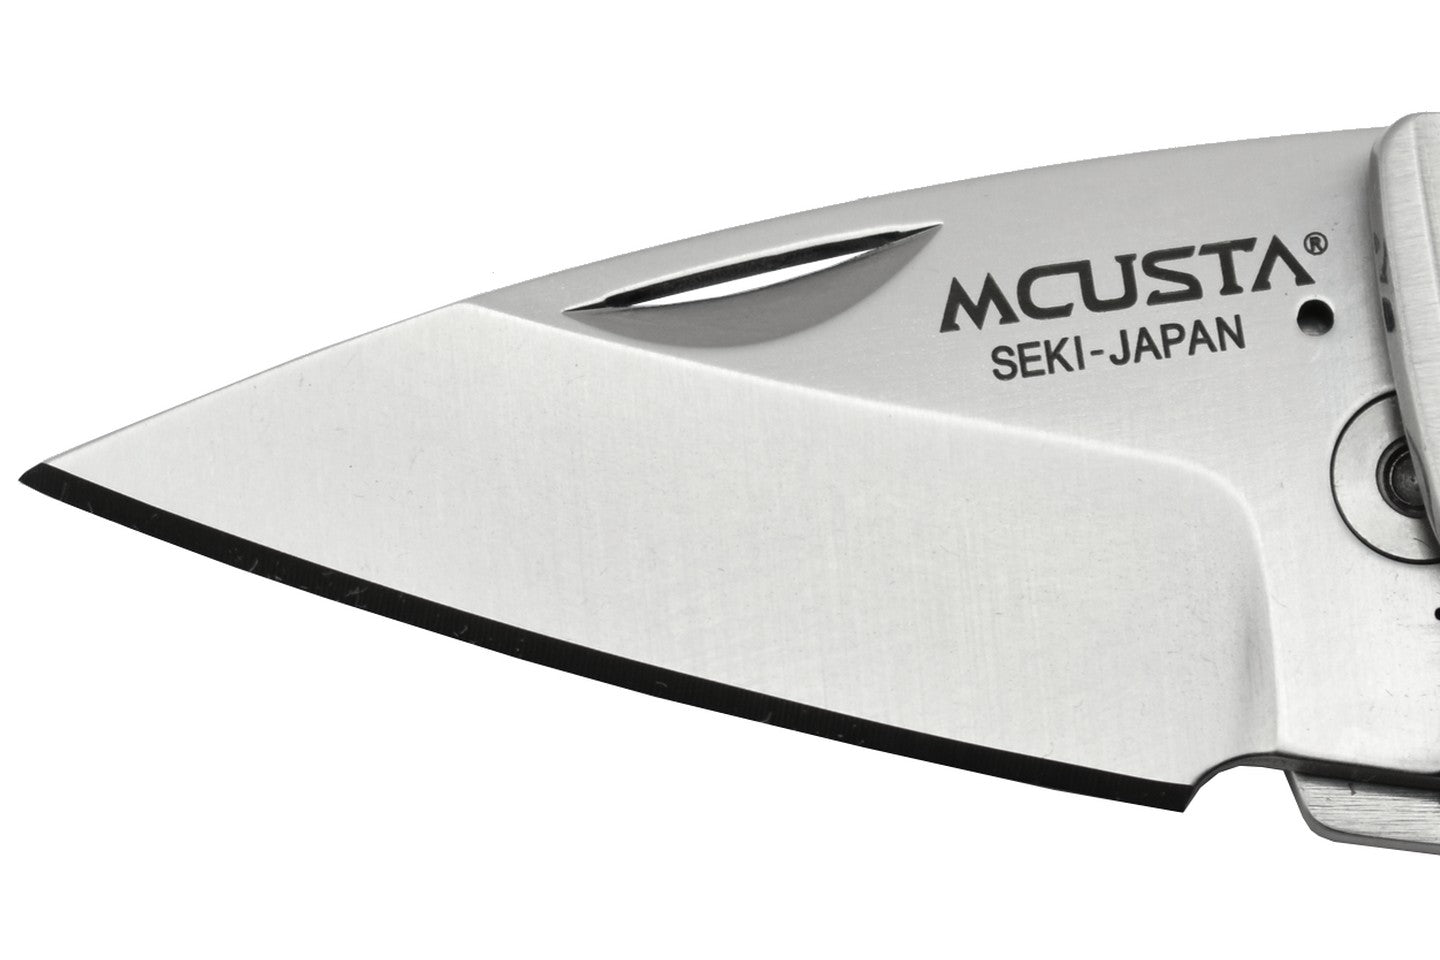 MCUSTA - MC85 - Money Clip édition Akechi Mitsuhide - Lame Acier AUS-8 - Manche Acier 420J2